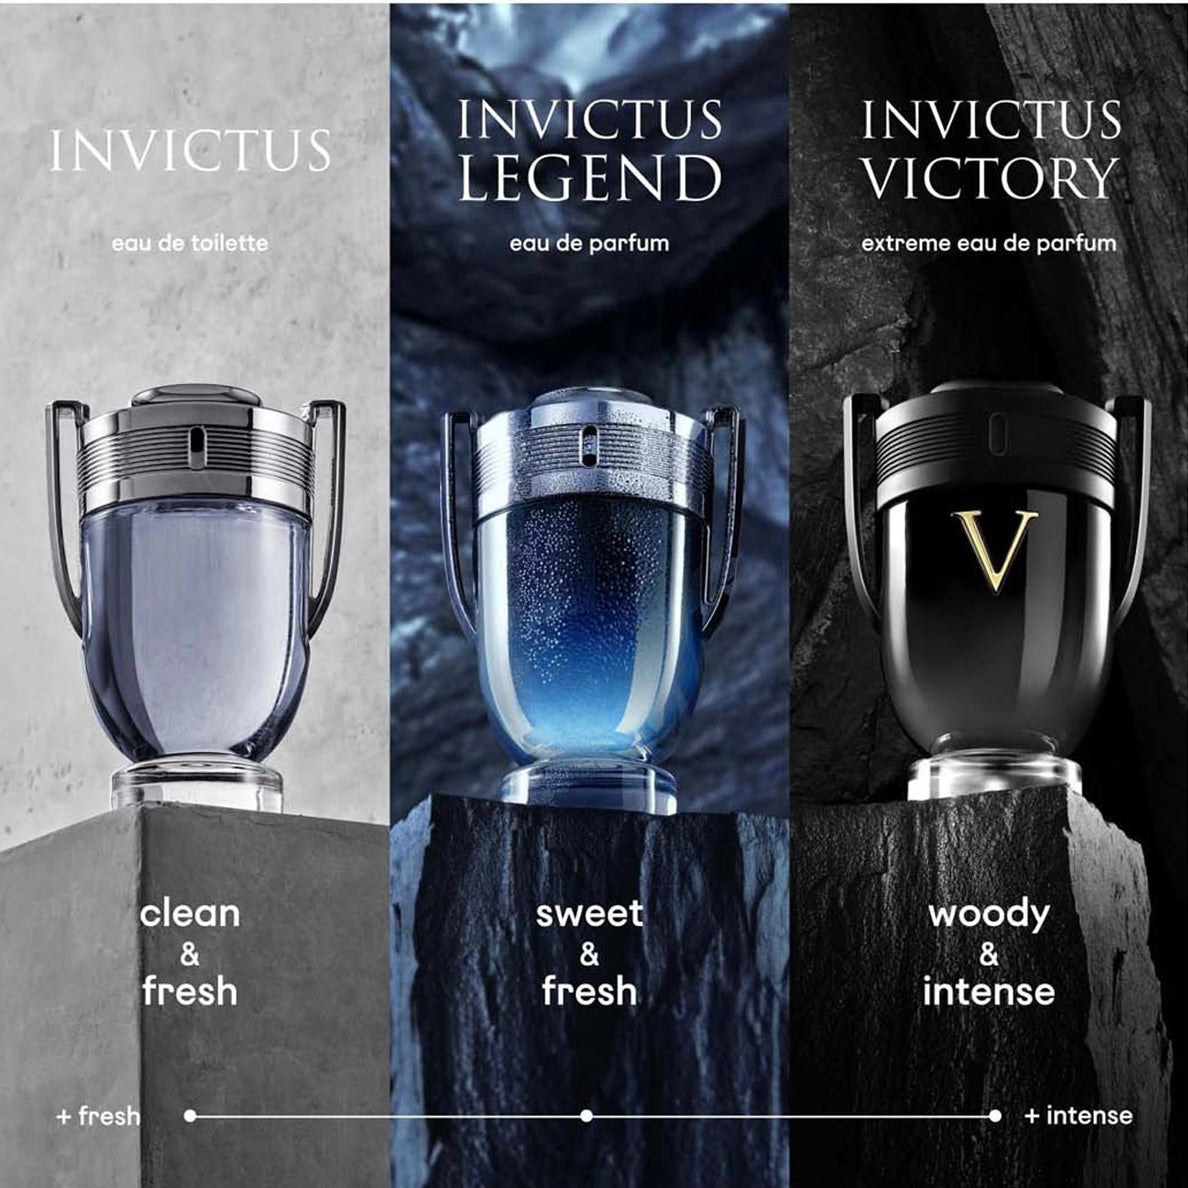 Paco Rabanne Invictus Victory Eau De Parfum 100 Ml